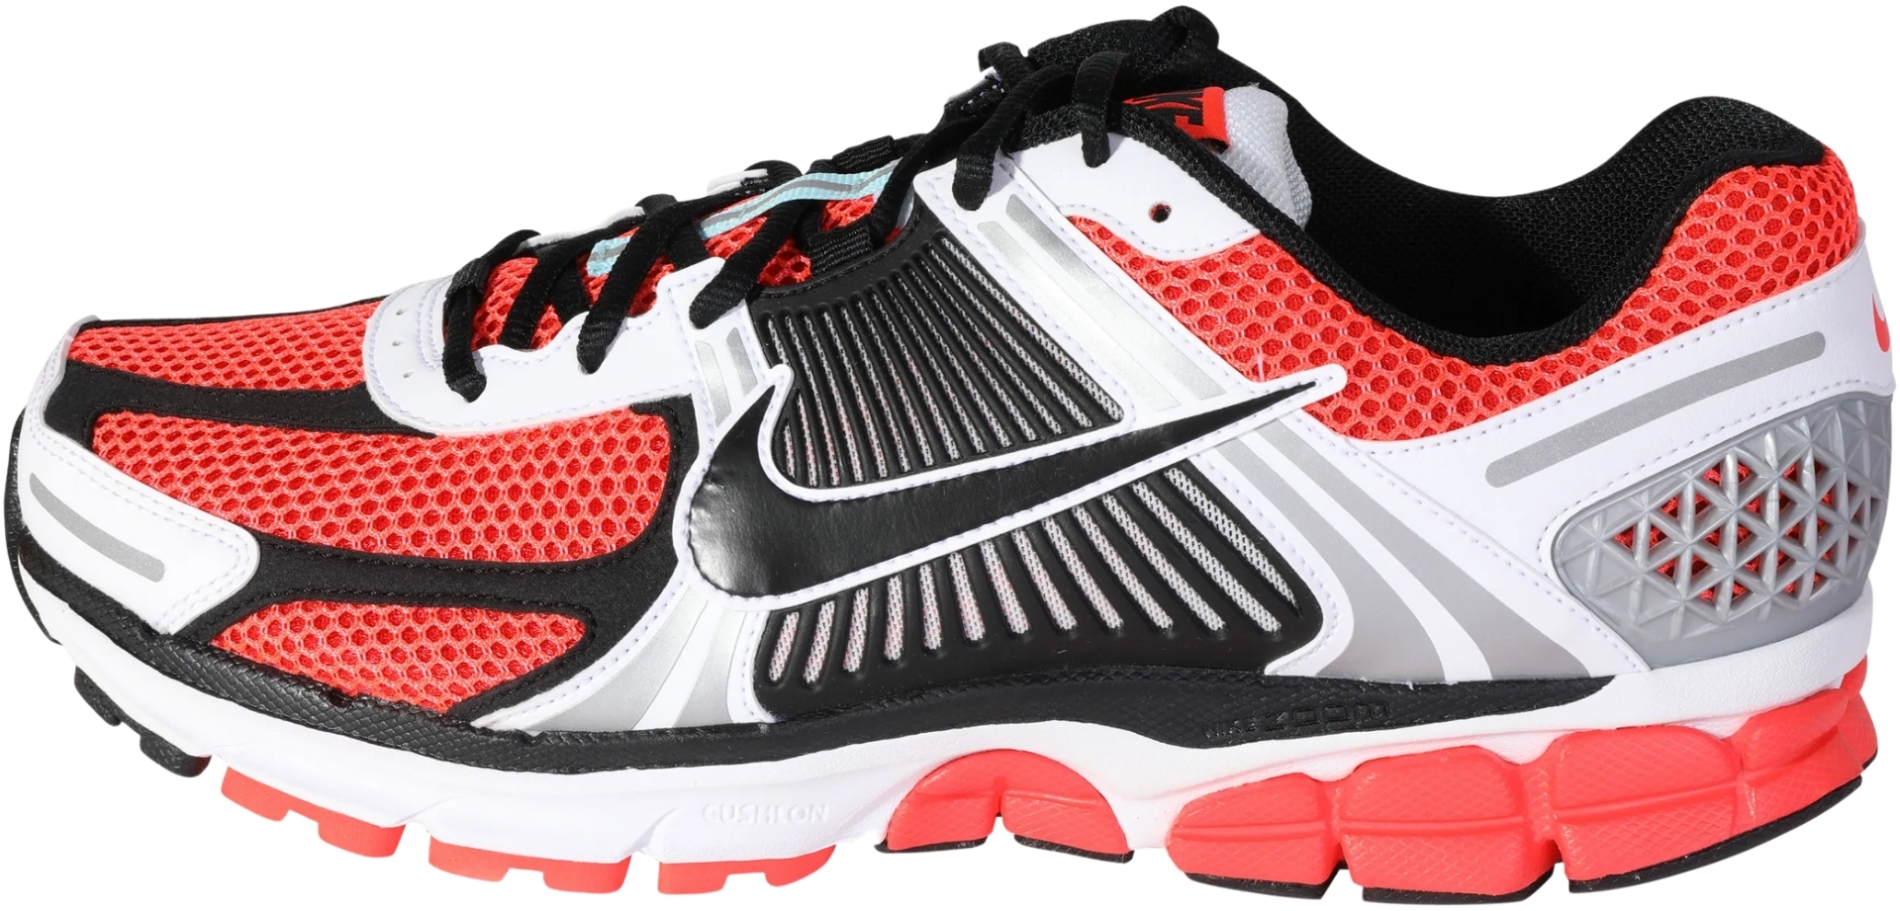 Escrupuloso continuar lino Nike Zoom Vomero 5 sneakers in red | RunRepeat